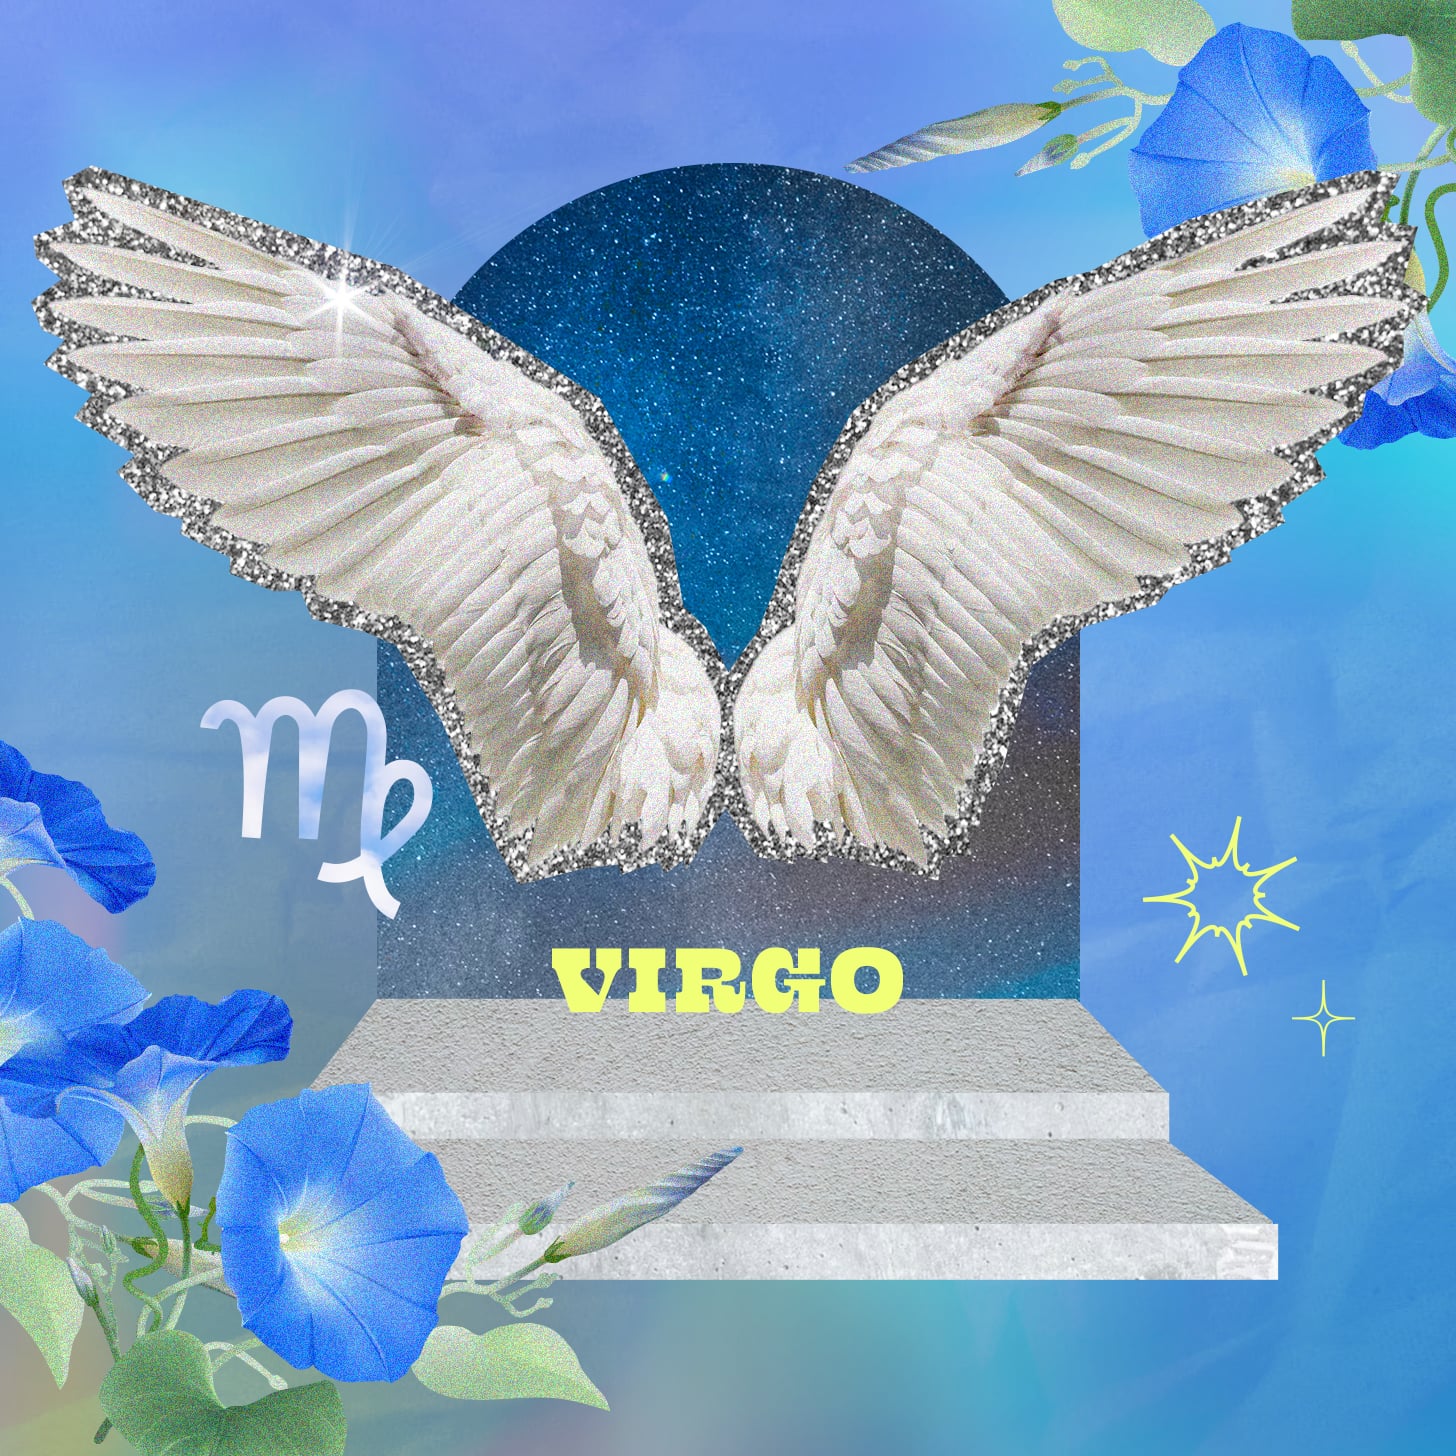 Virgo weekly horoscope for December 4, 2022